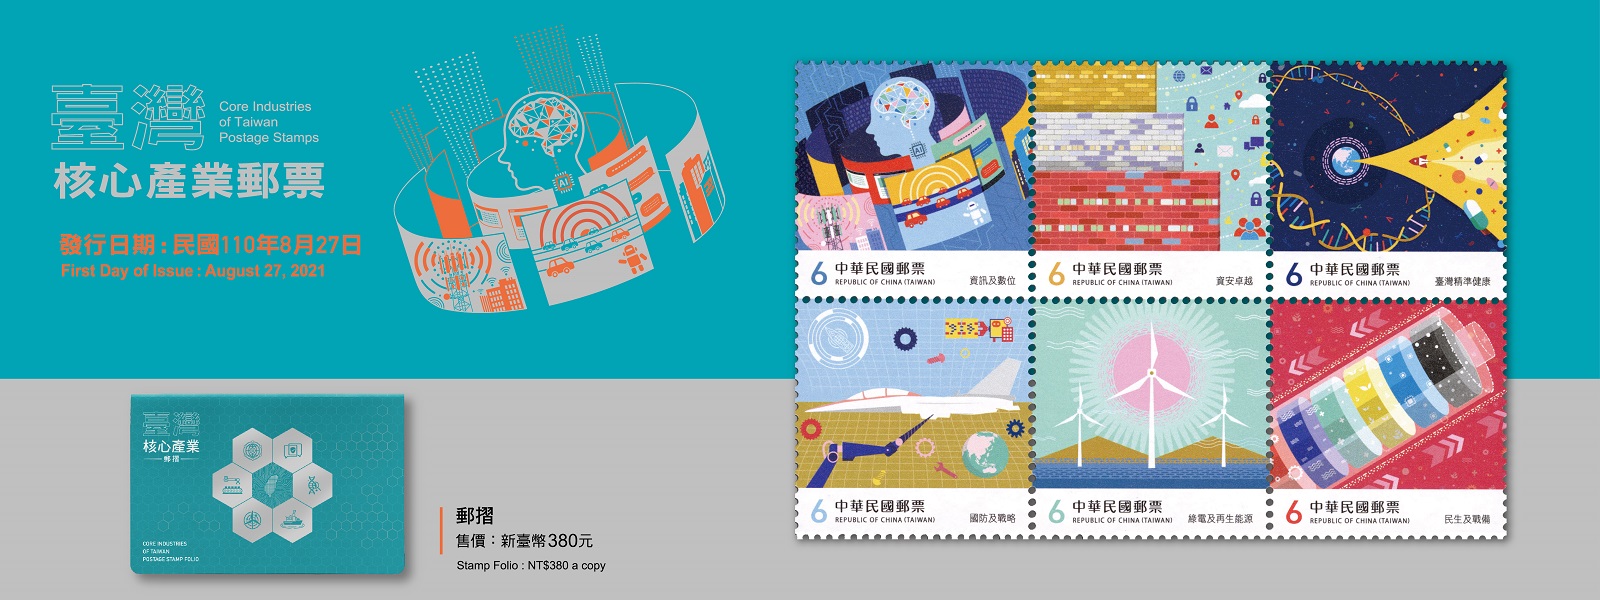 廣告連結:特711 臺灣核心產業郵票